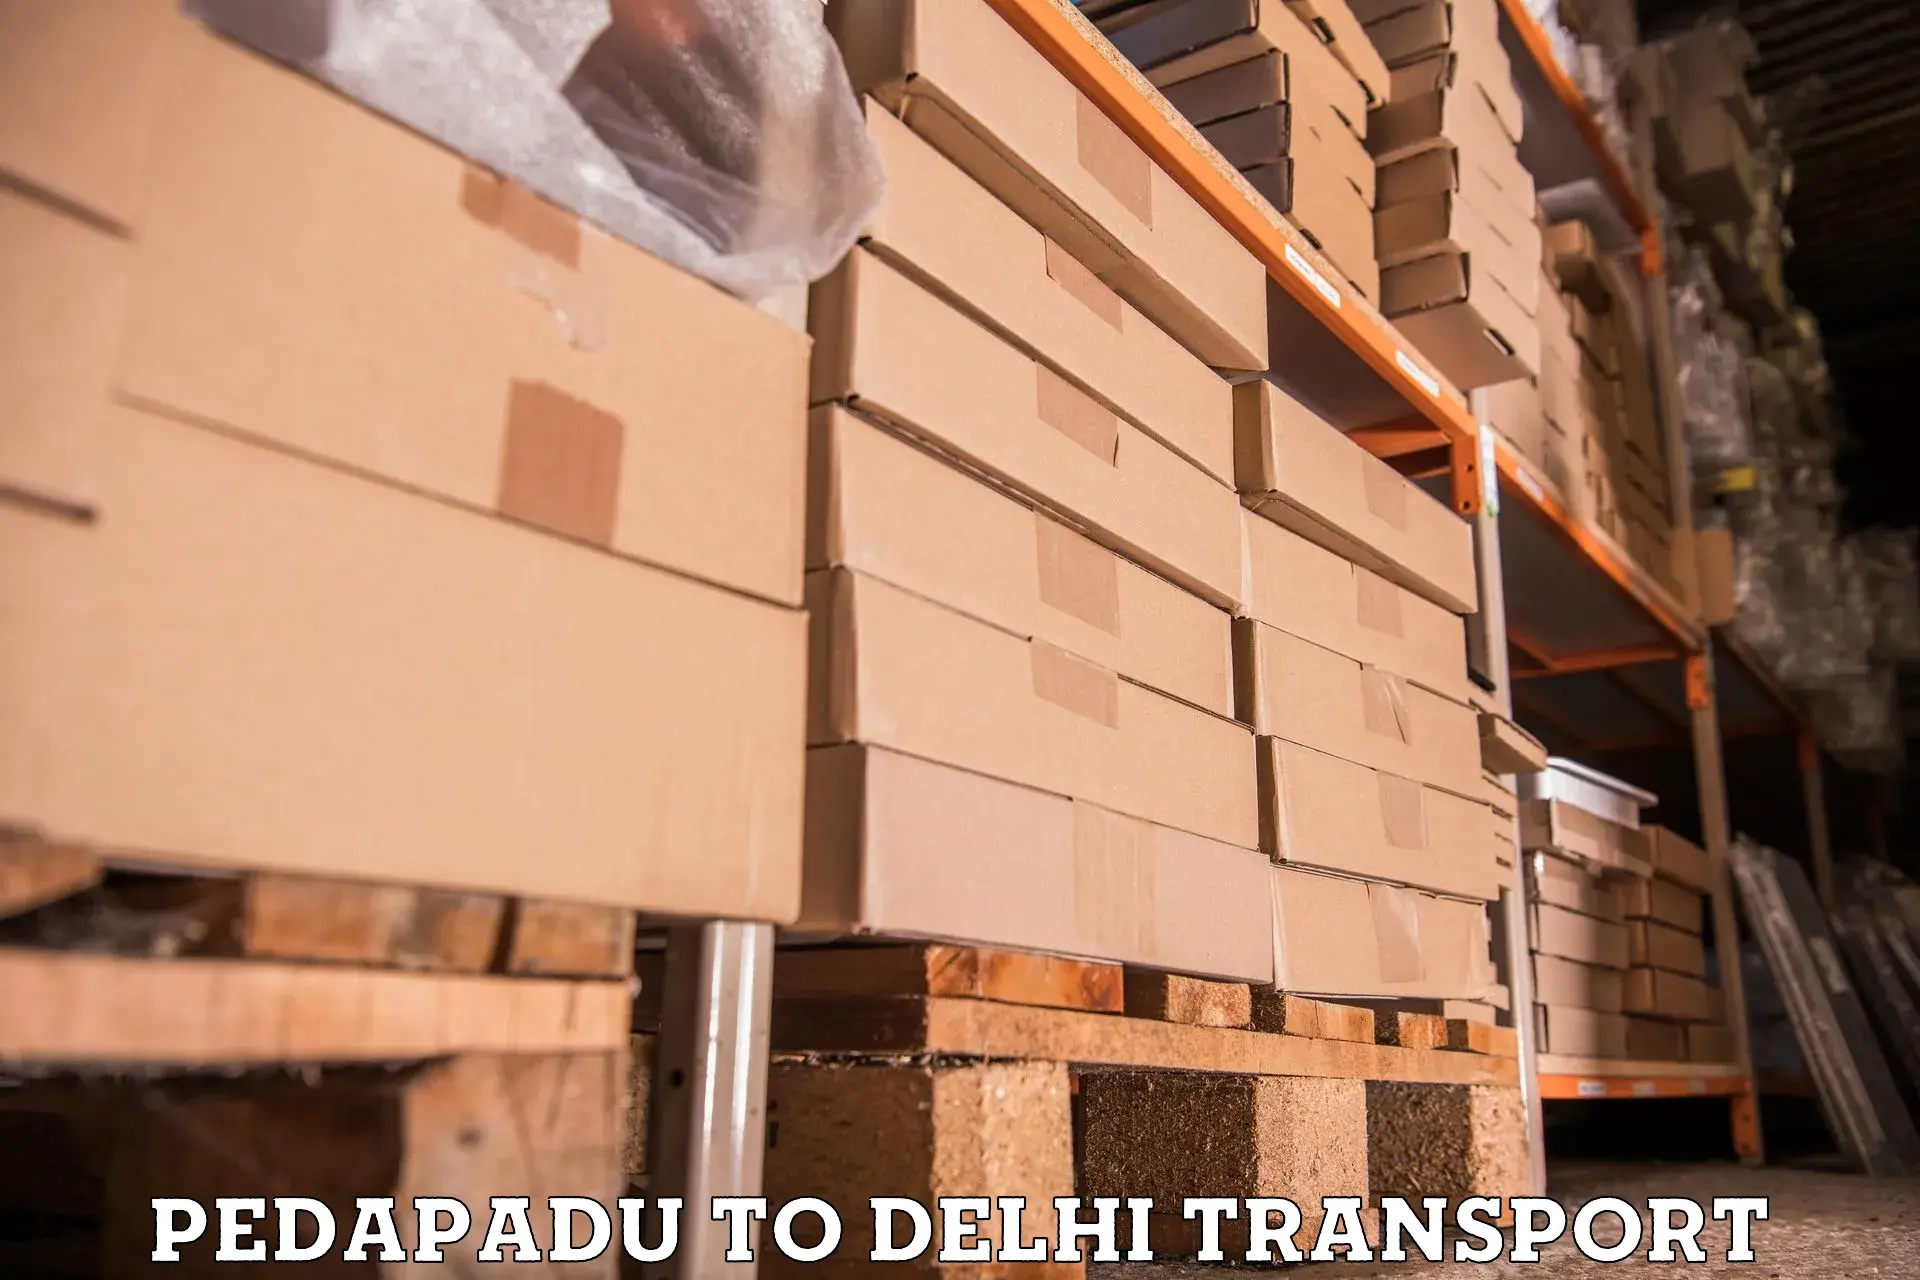 Commercial transport service Pedapadu to NCR